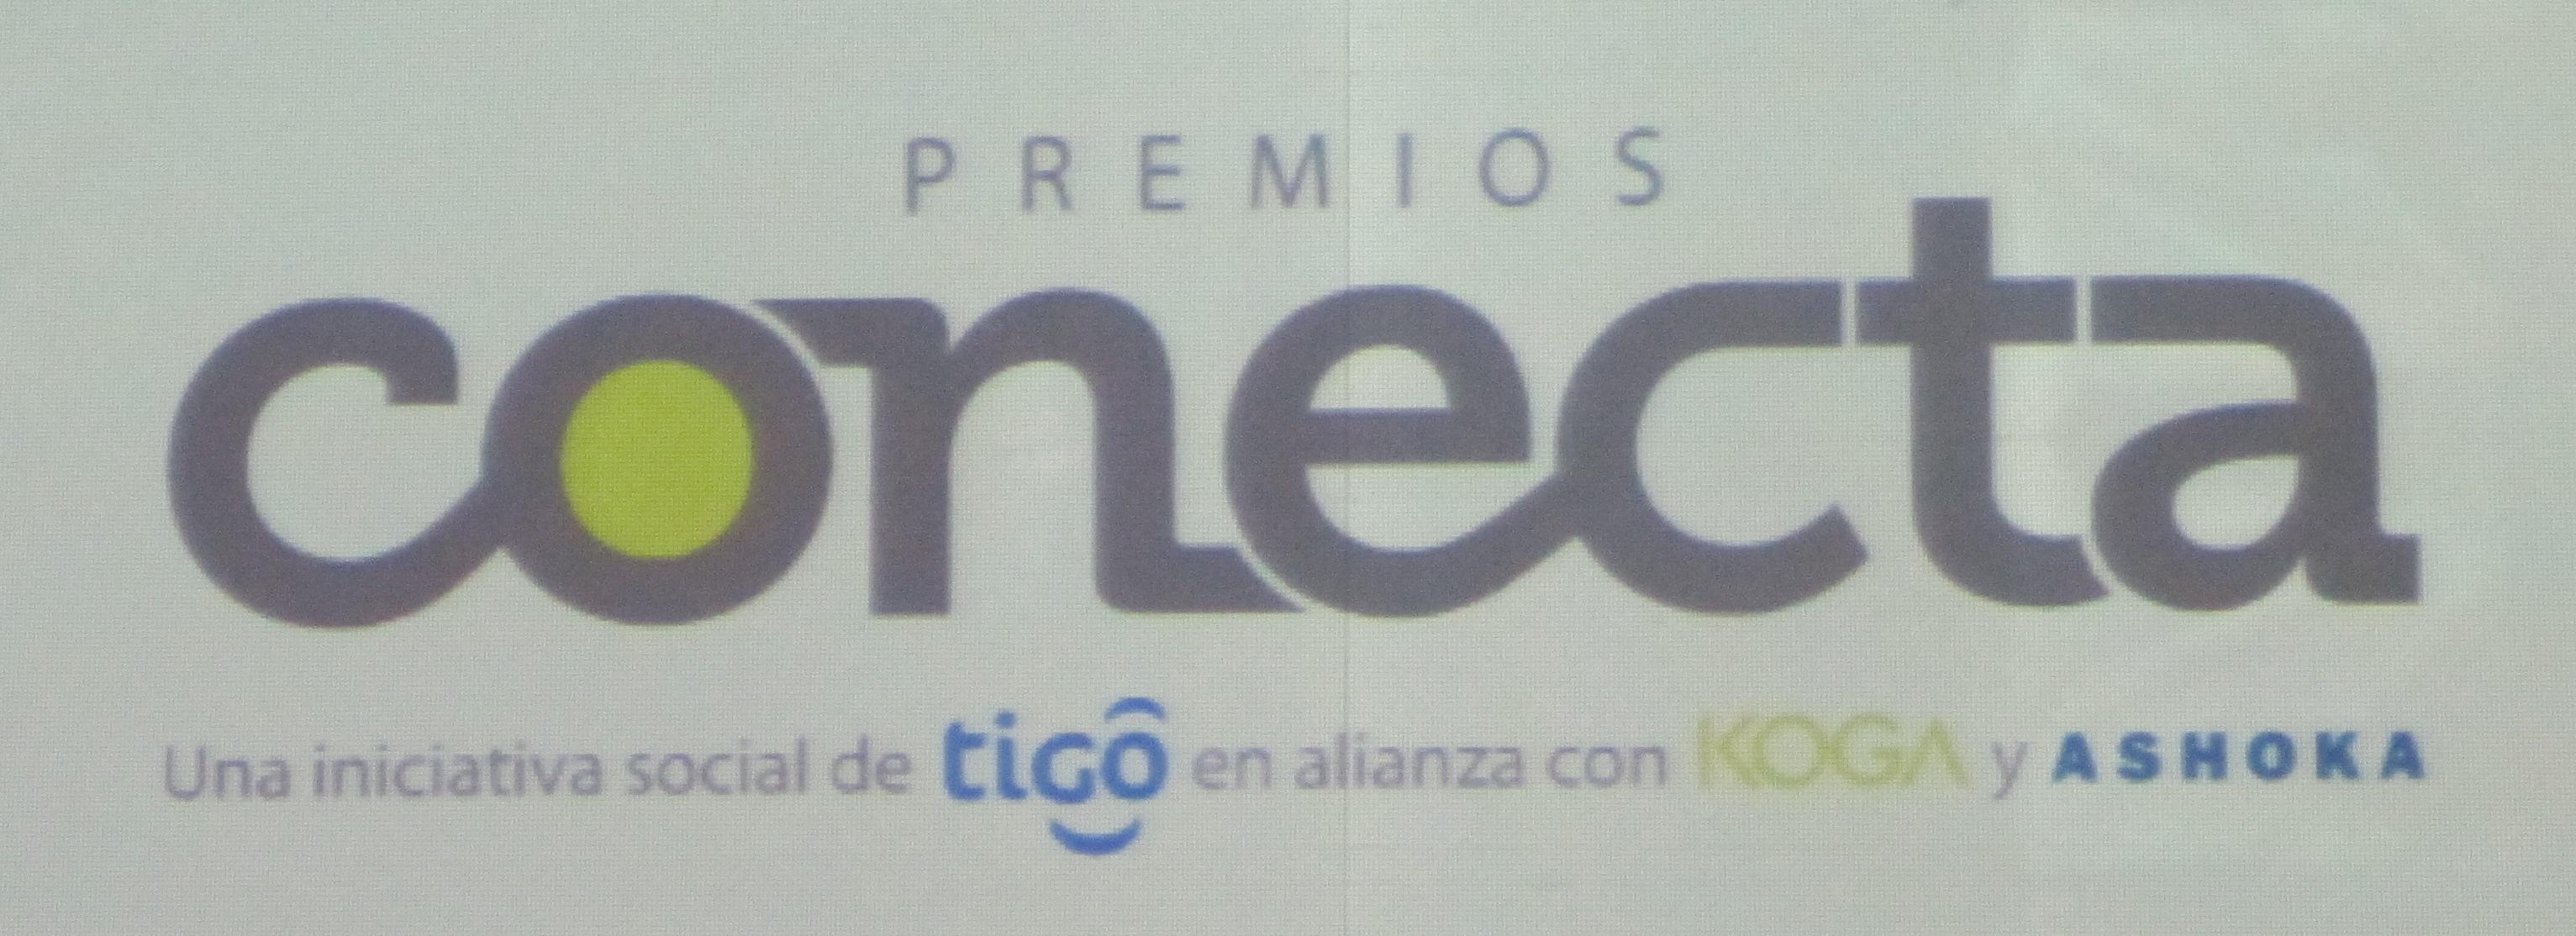 Premios Conecta 2014